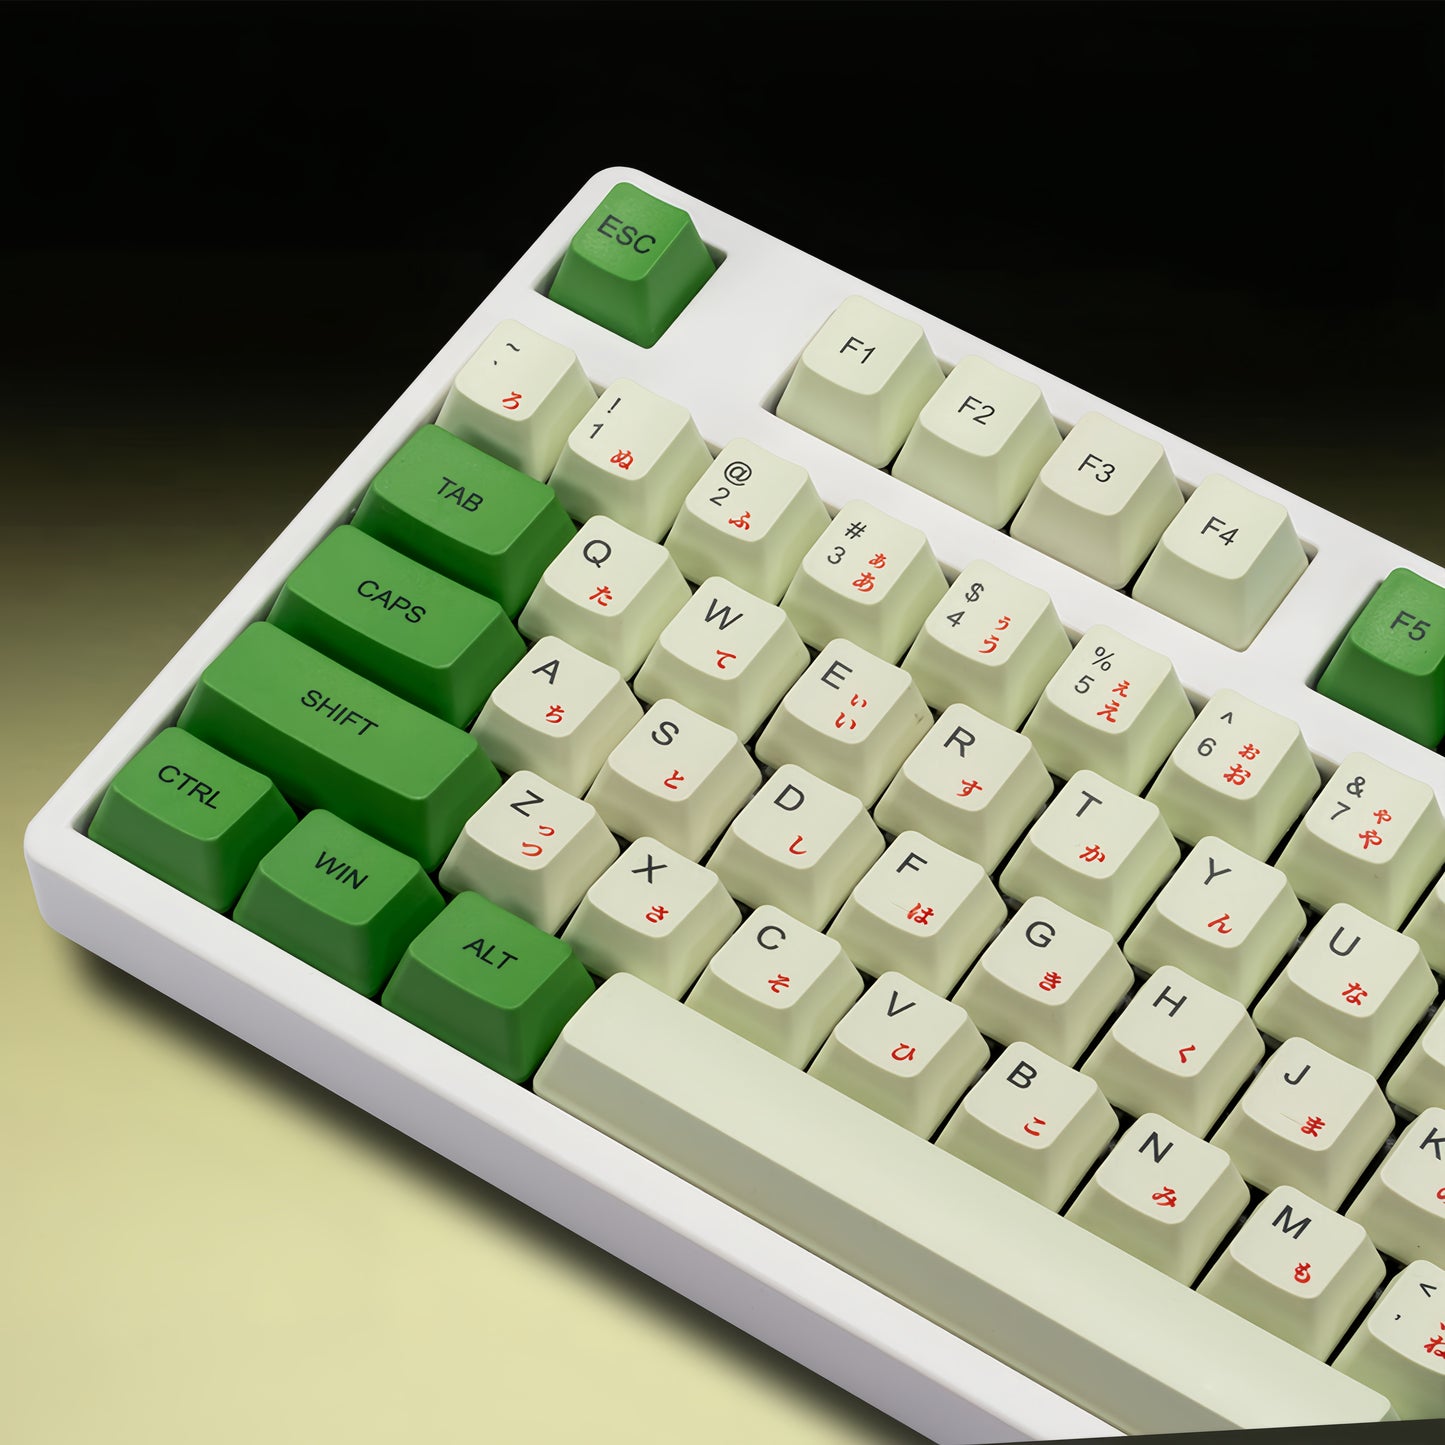 OEM PBT Dye-Sub Keycap PBT Keycap  Set - Matcha Green02